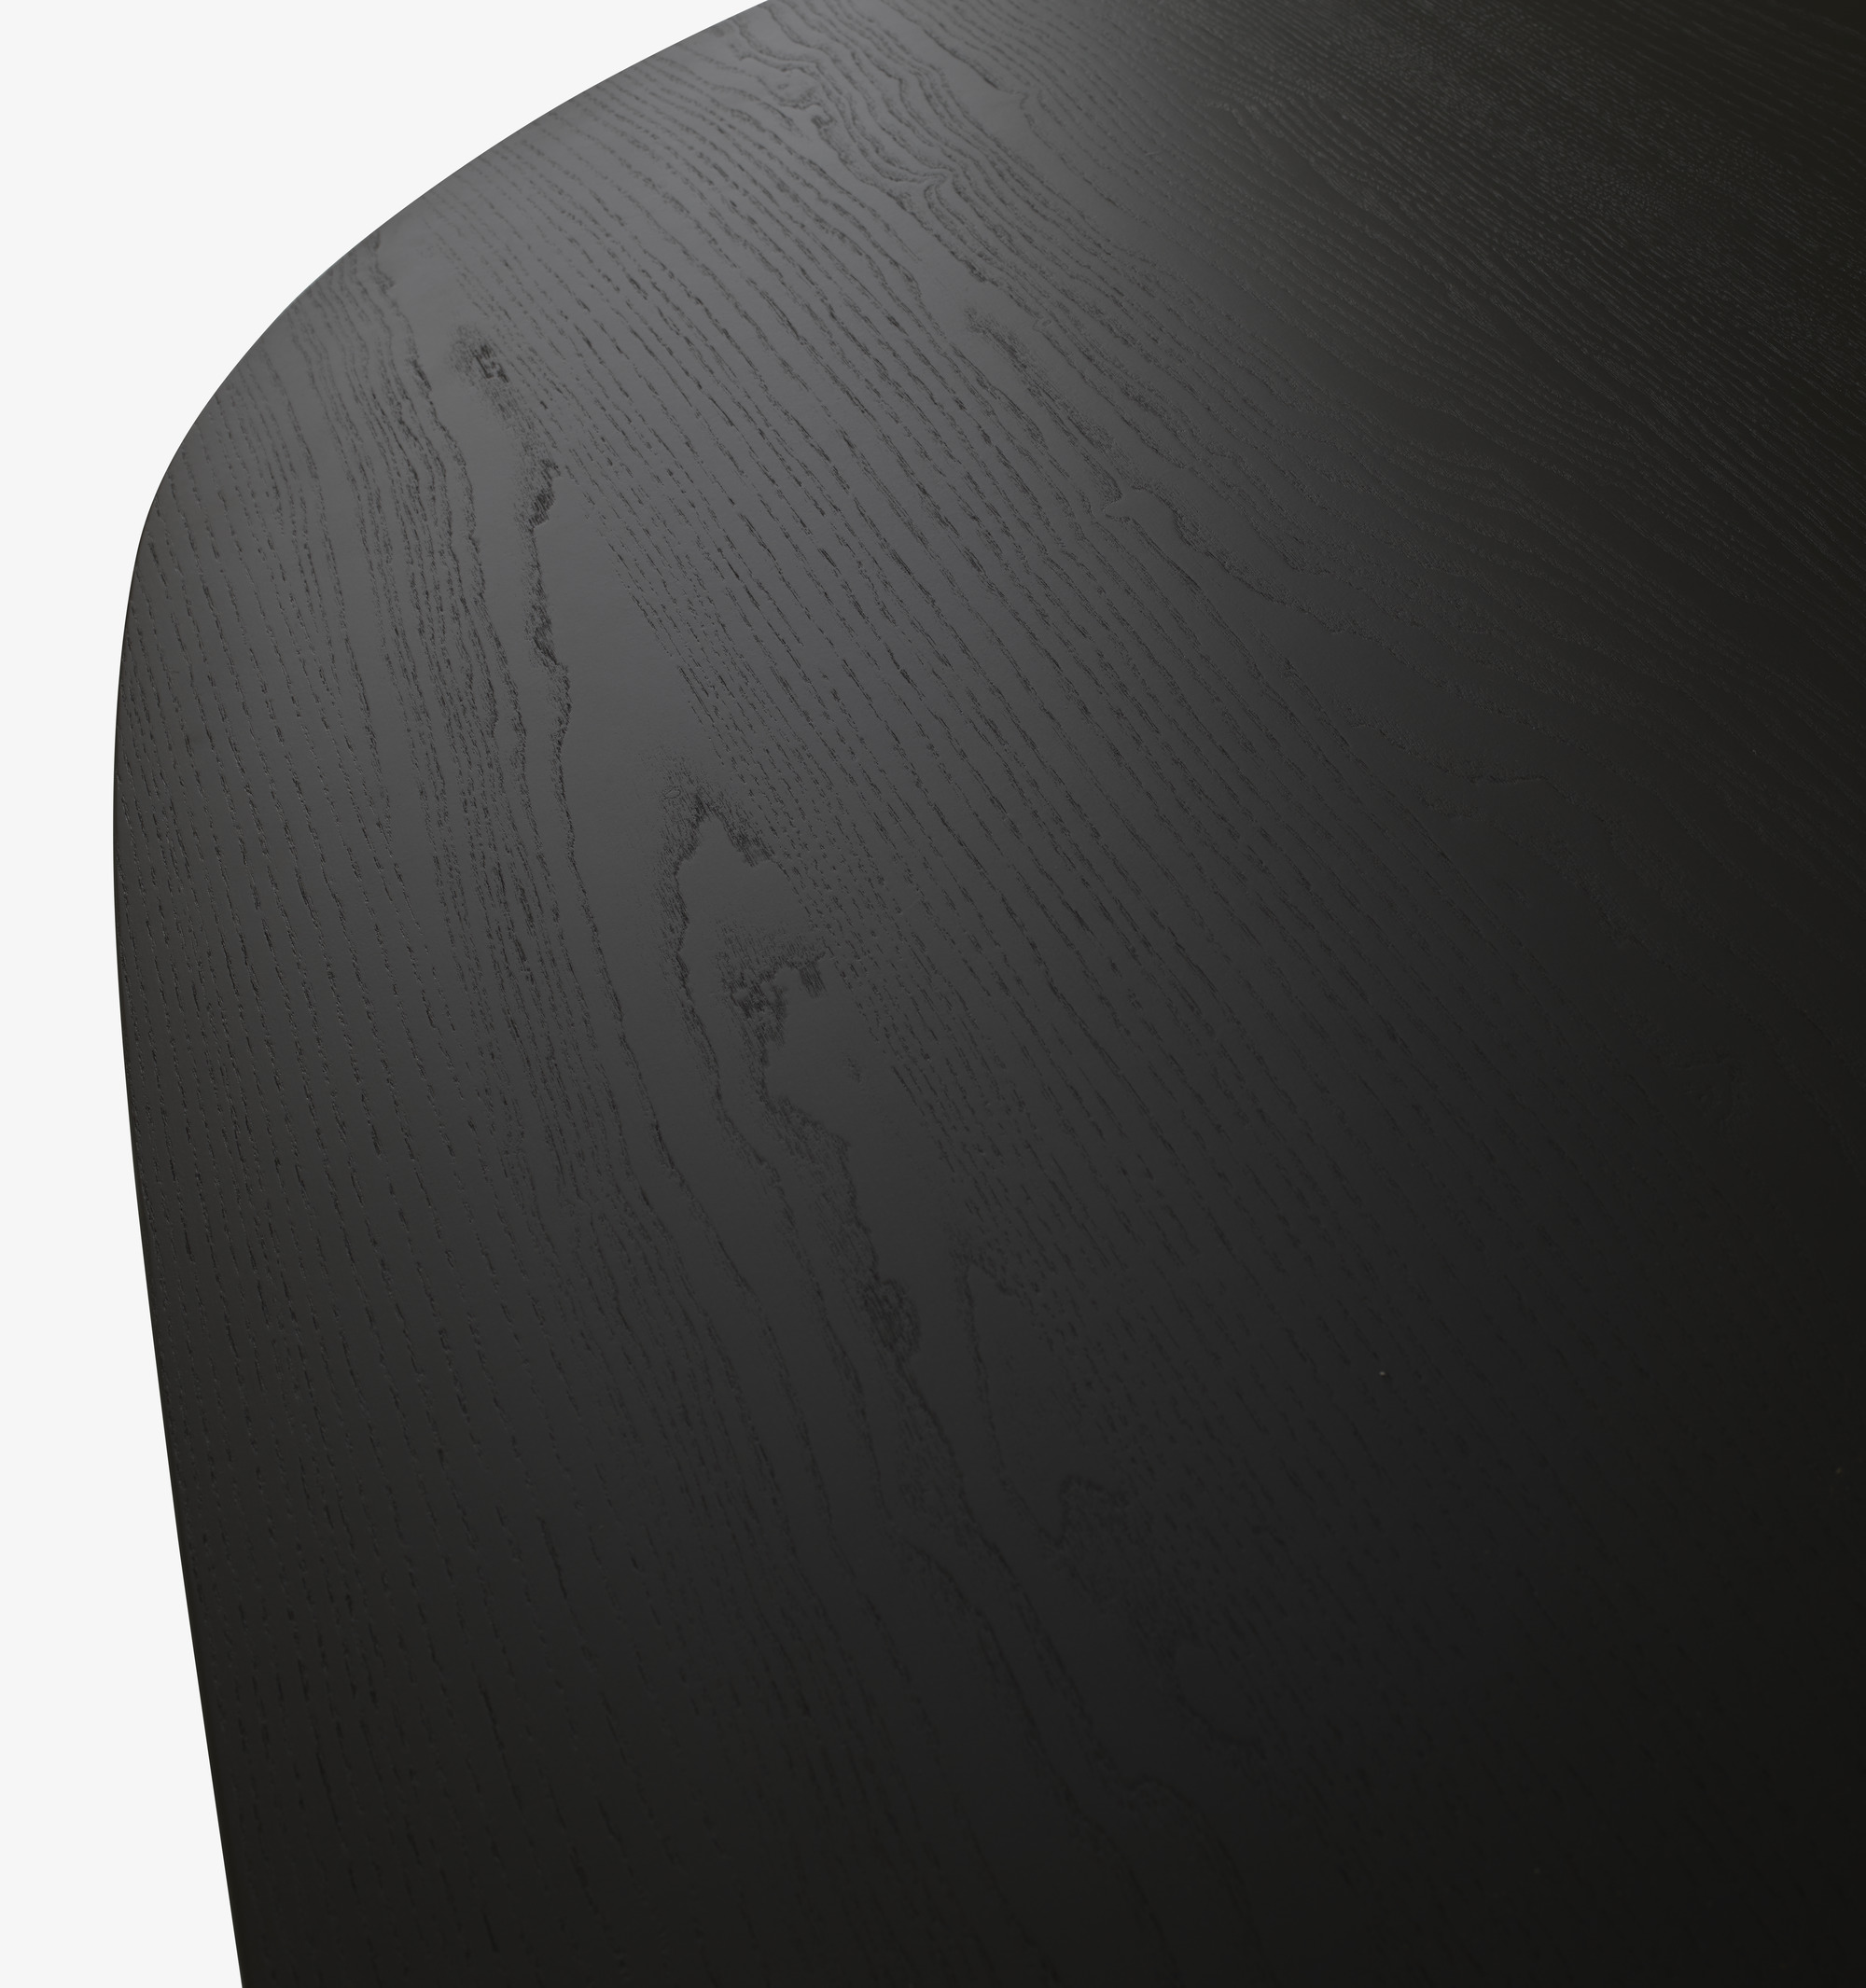 Image Mesa de comedor fresno teñido negro patas de fresno teñido negro 4